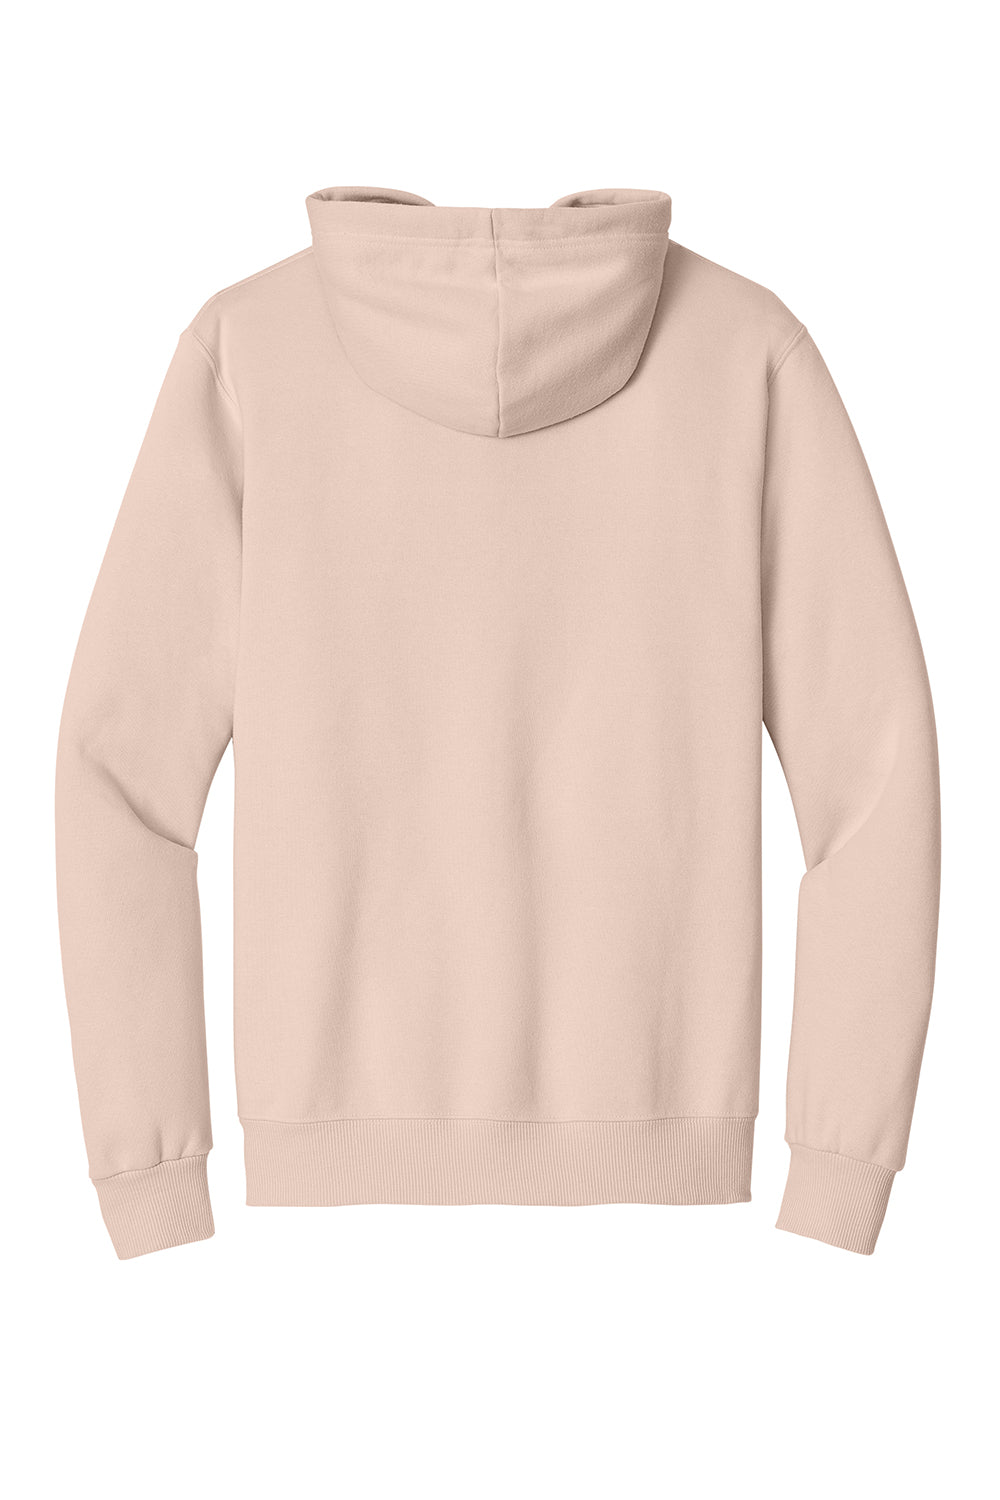 Jerzees 700M Mens Eco Premium Hooded Sweatshirt Hoodie Blush Pink Flat Back